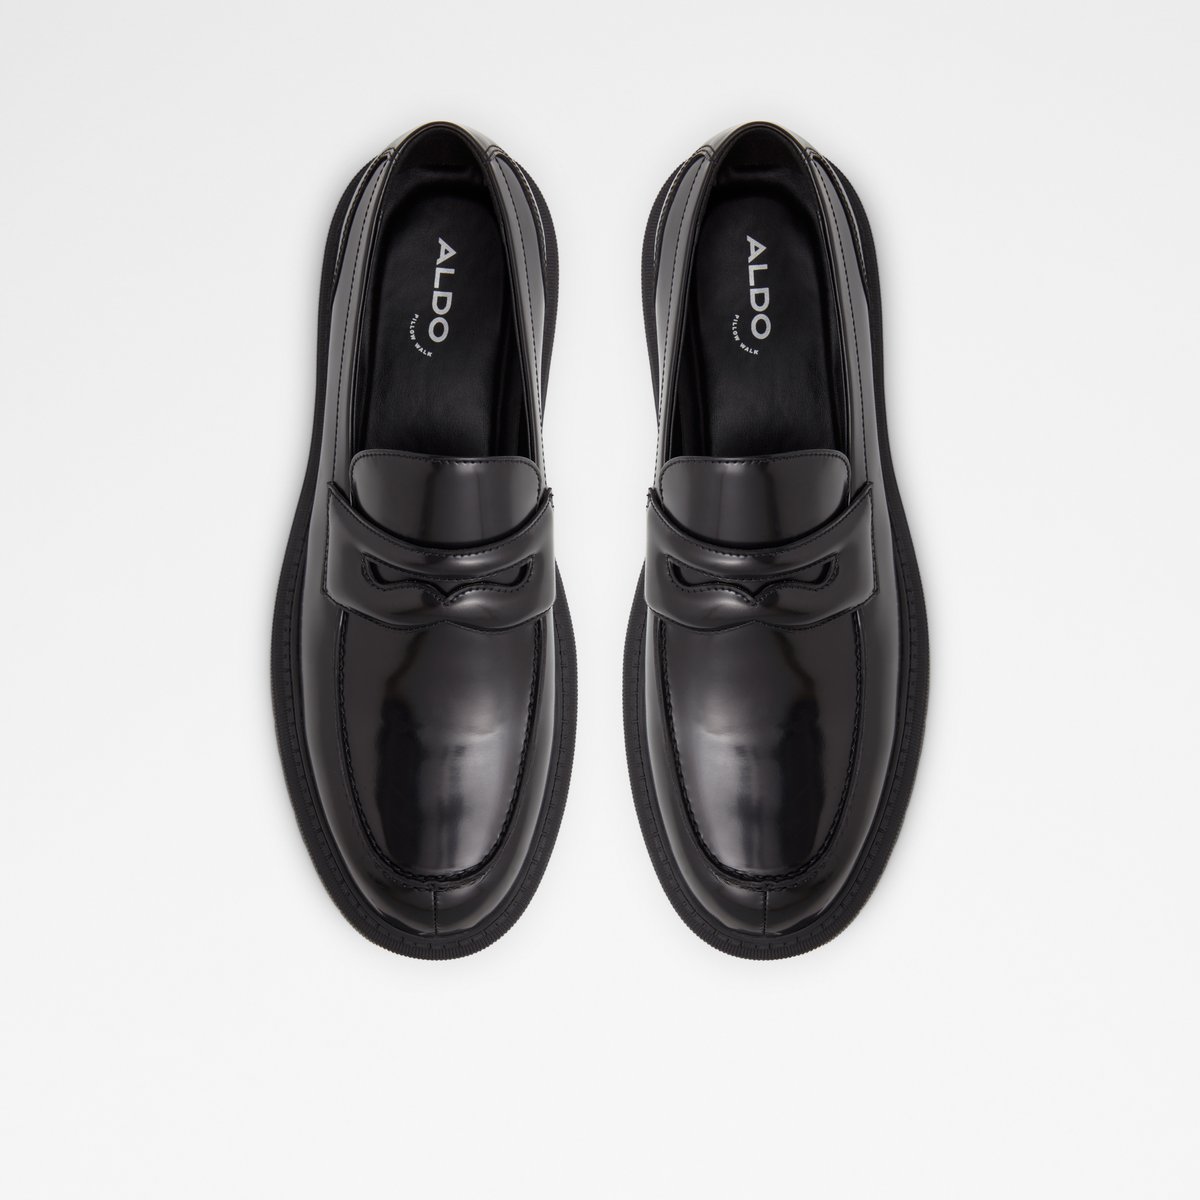 Bigthink Black Leather Smooth Men's Dress Shoes | ALDO US